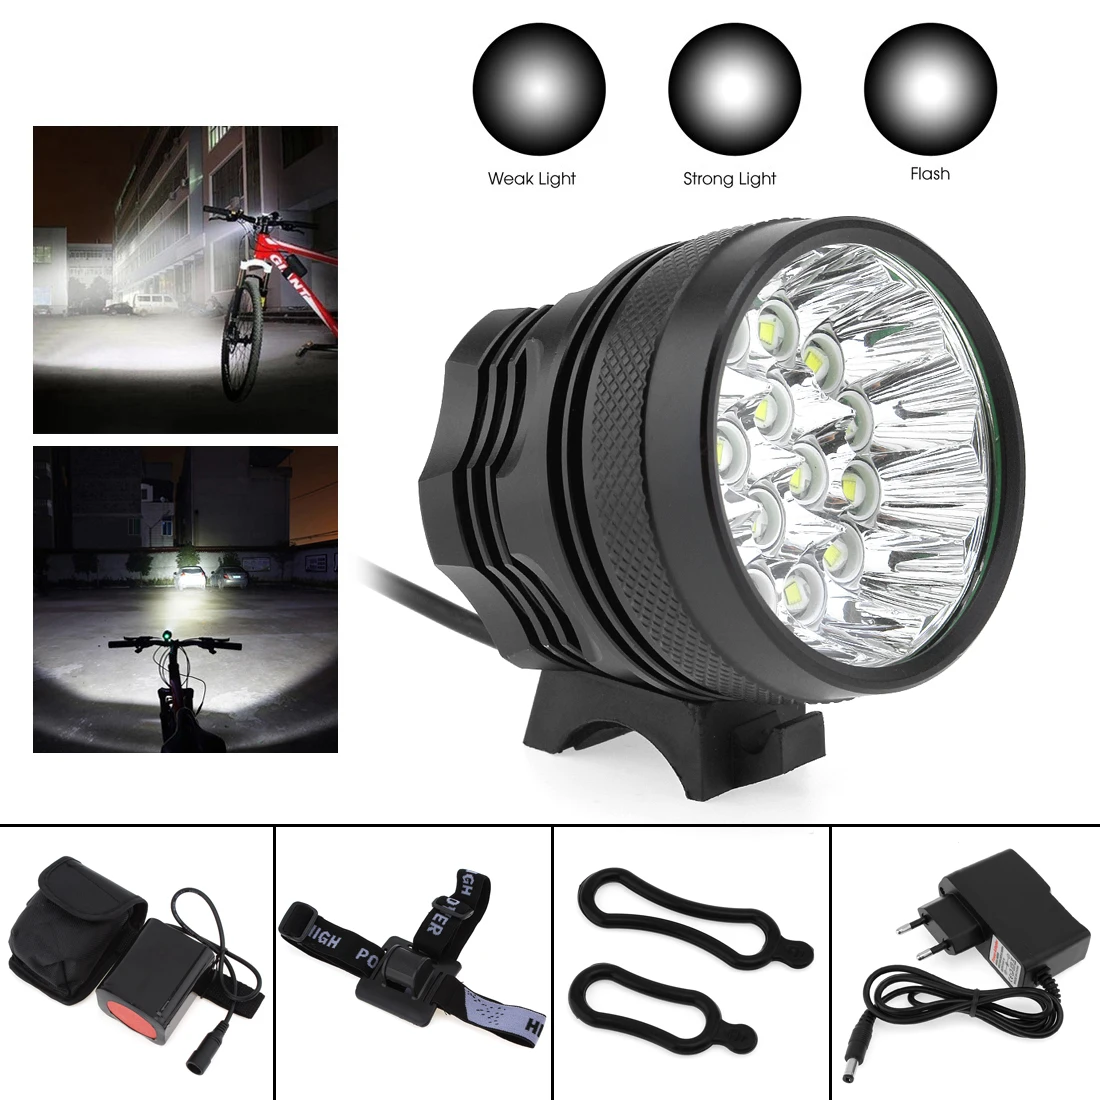 16 x XM-L T6 светодиодный велосипедный фонарь с 3 режимами, велосипедный светильник, головной светильник, велосипедный фонарь с аккумулятором 8,4 в 6400 мАч